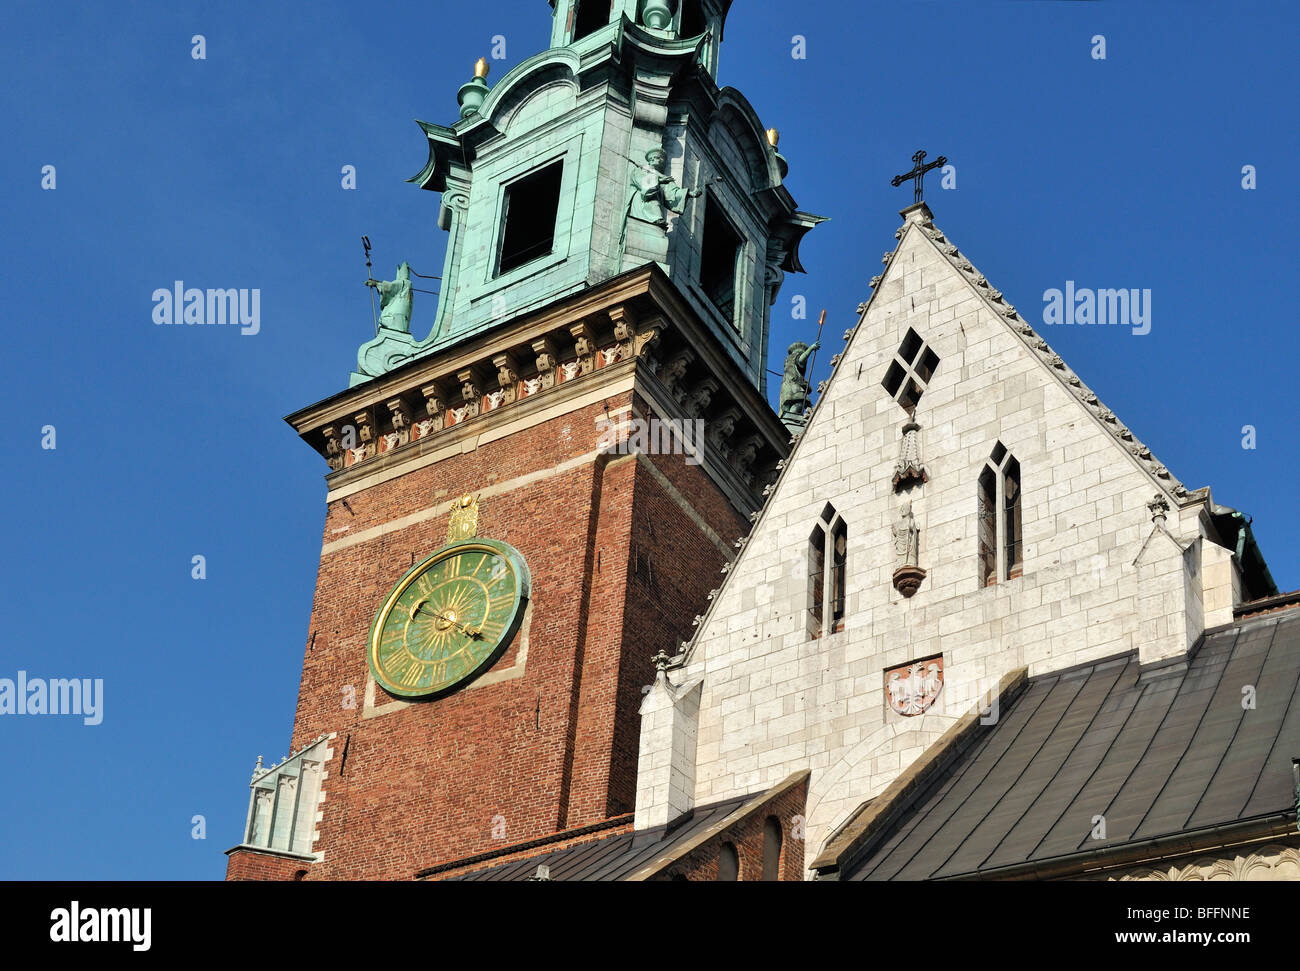 Detalle de la Catedral Basílica de los Ss. Stanisław y Vaclav sobre la colina de Wawel, en Cracovia, Polonia Foto de stock